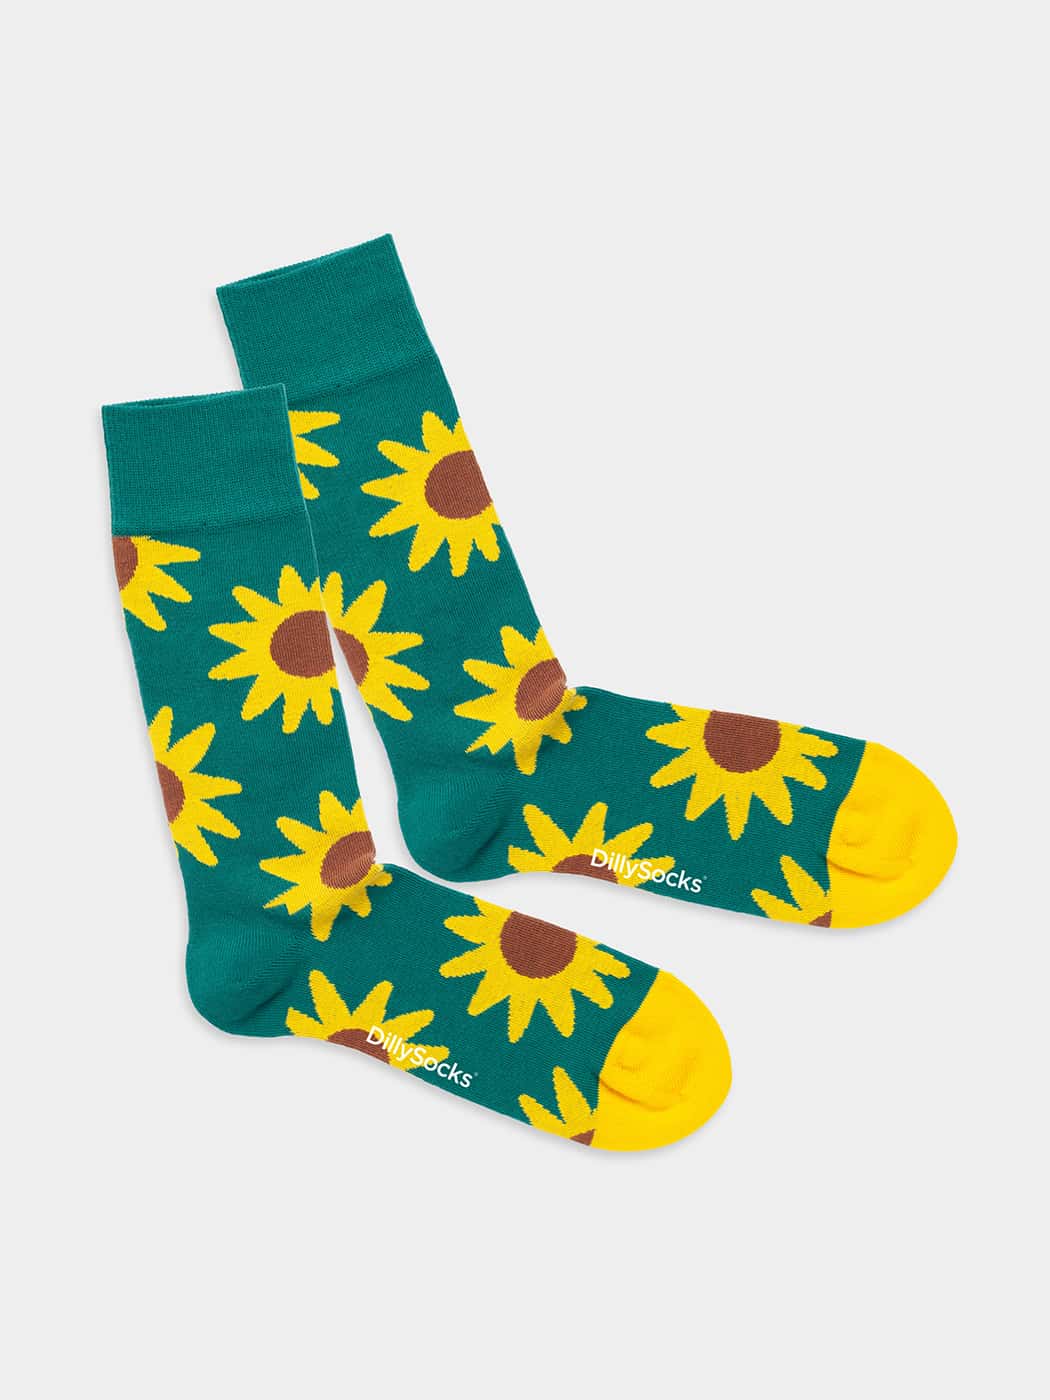 - Socken in Grün mit Blumen Motiv/Muster von DillySocks